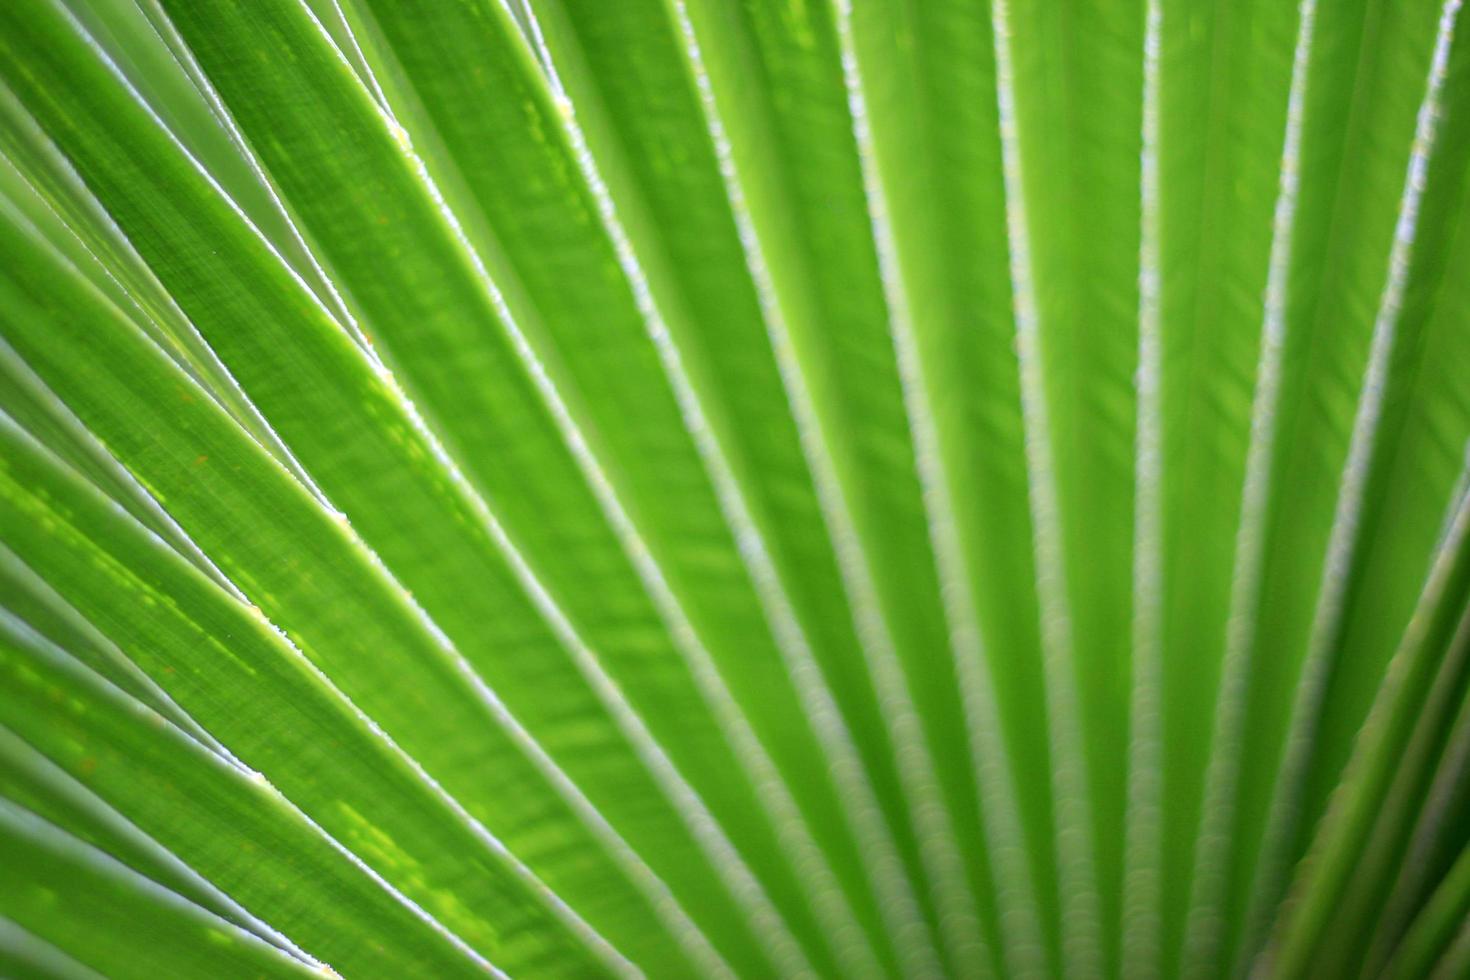 líneas y texturas de hojas de palma verde foto